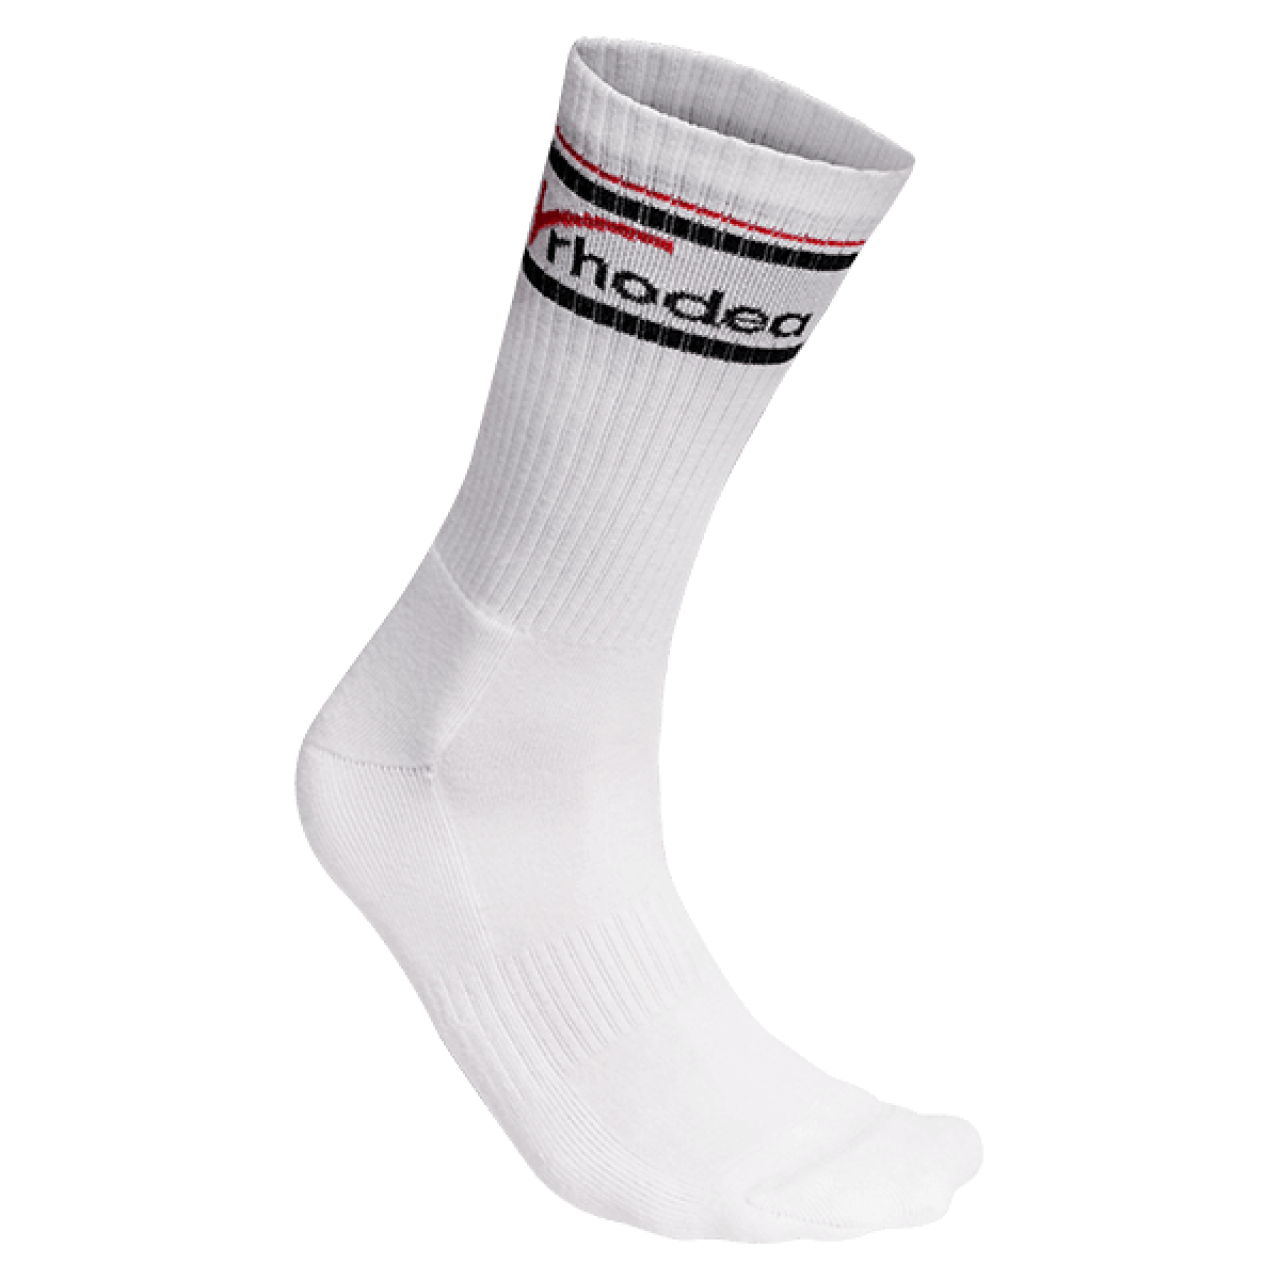 Rhodea Sport Tennis Socks Unisex Celik Socks Socken Online Kaufen